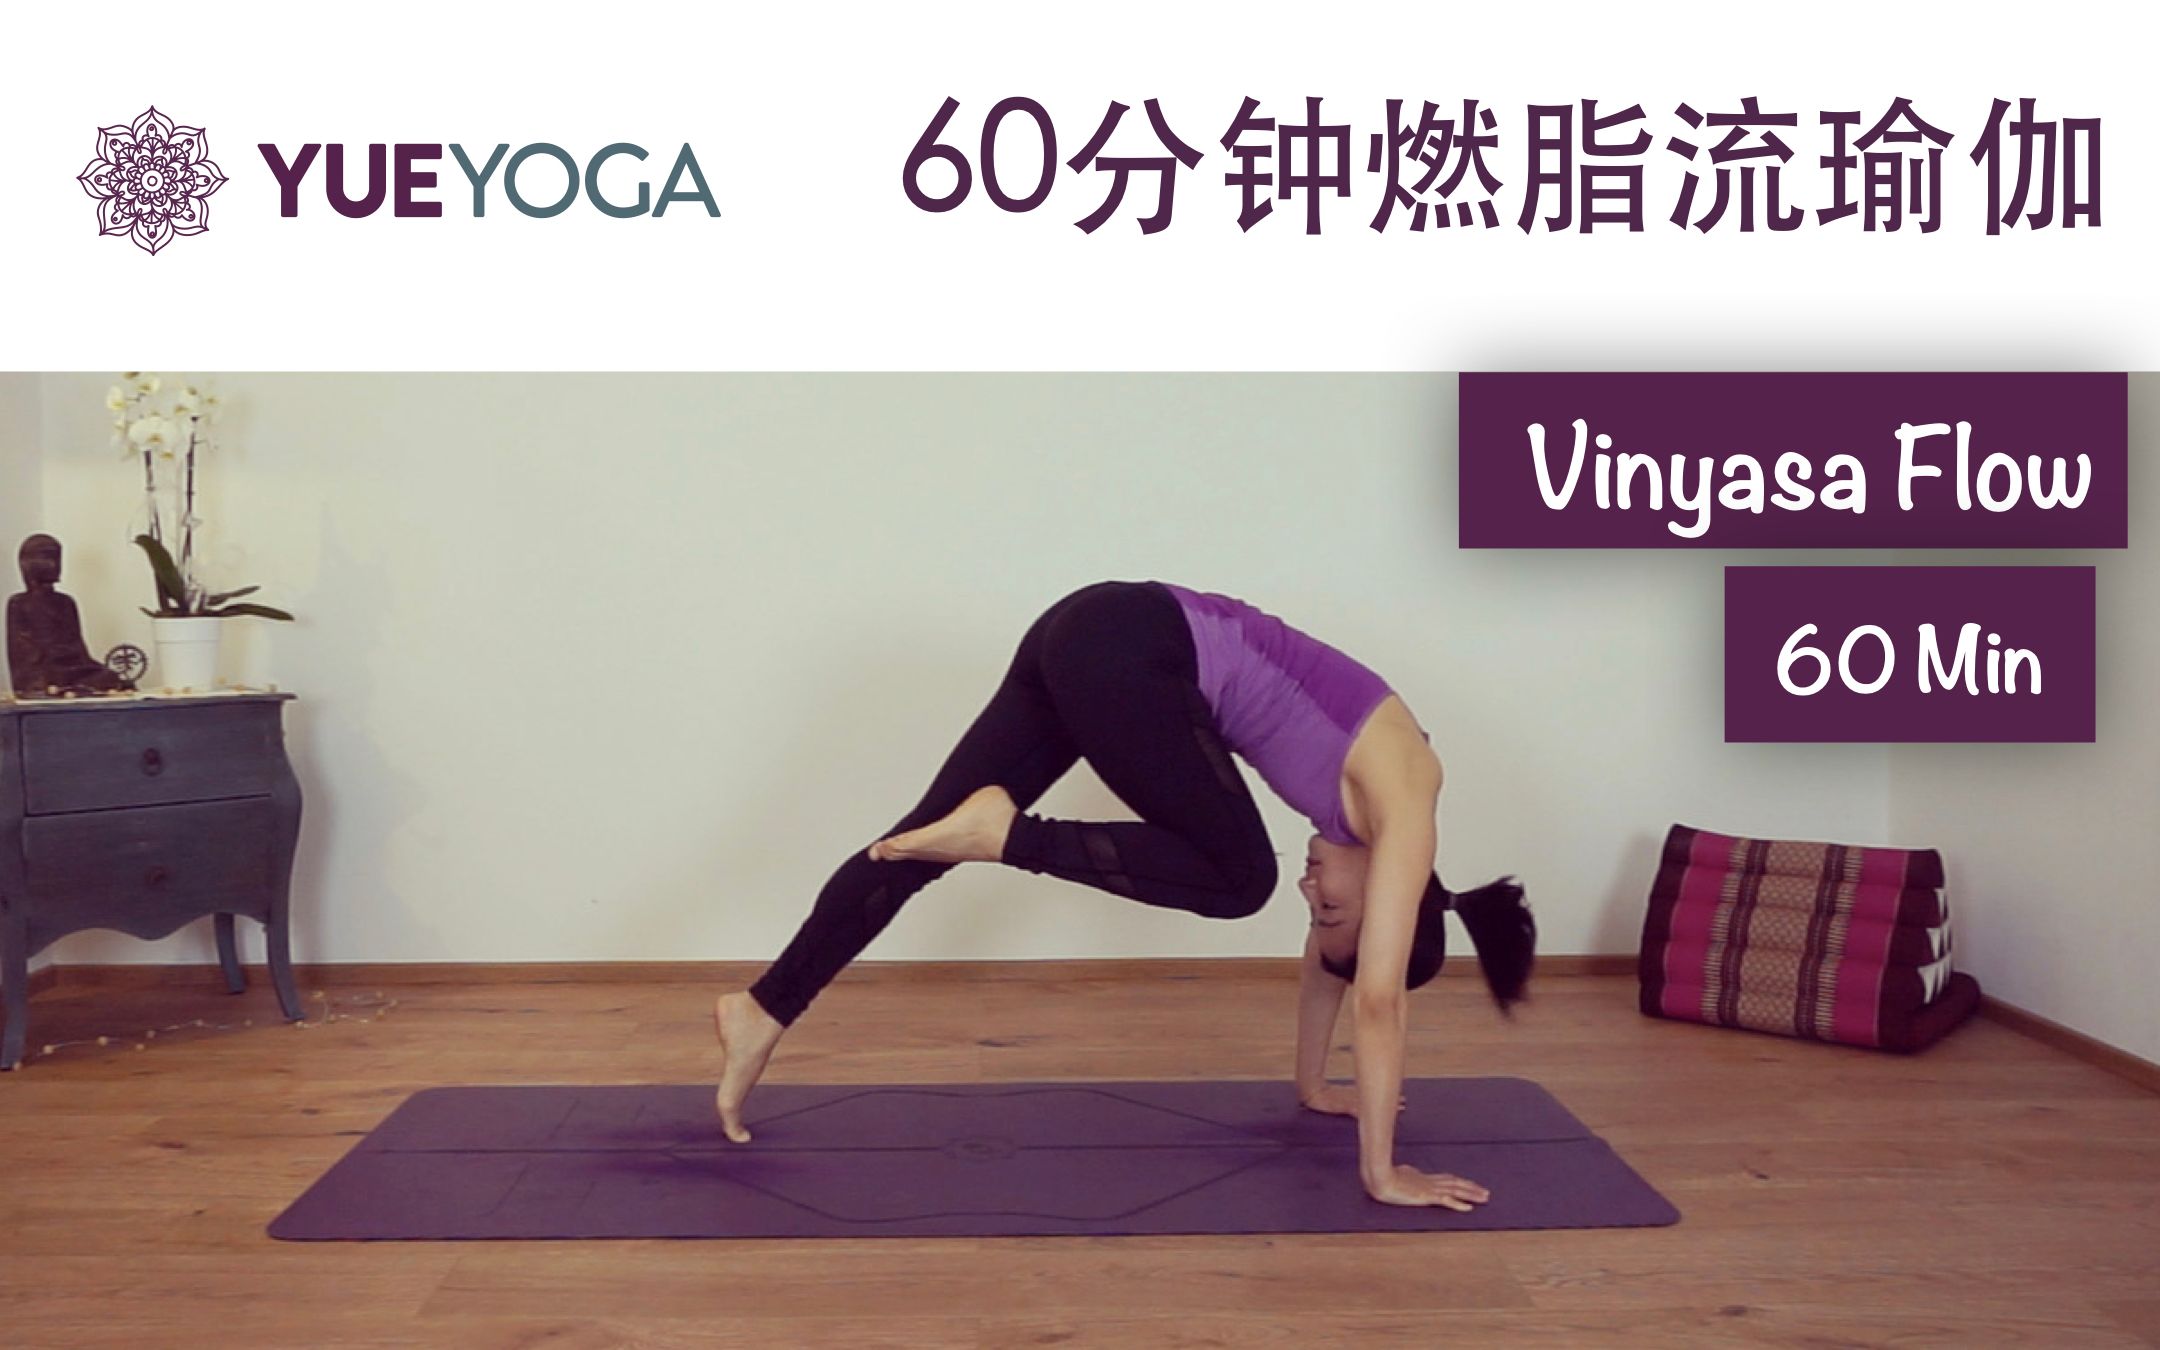 60分钟燃脂Flow 流瑜伽 ❤ 增强全身力量与柔韧性 （中级难度）60min Vinyasa Flow | Yue Yoga